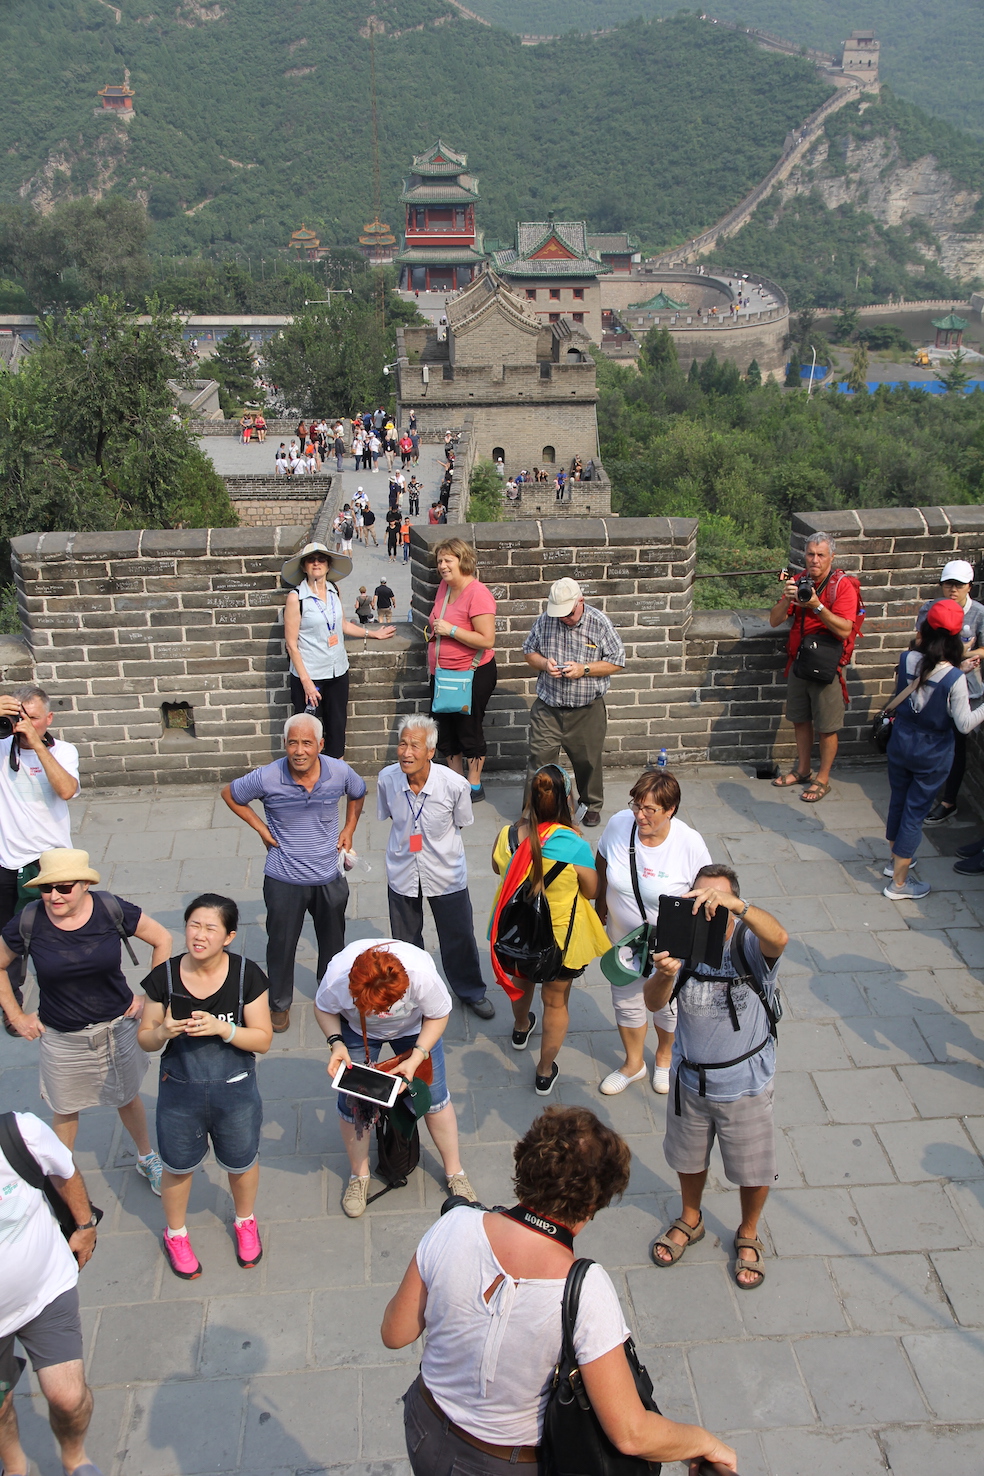 Wielki Chiński Mur biegnie w terenie górzystym chroniąc państwo chińskie przed najeźdźcami z północy.